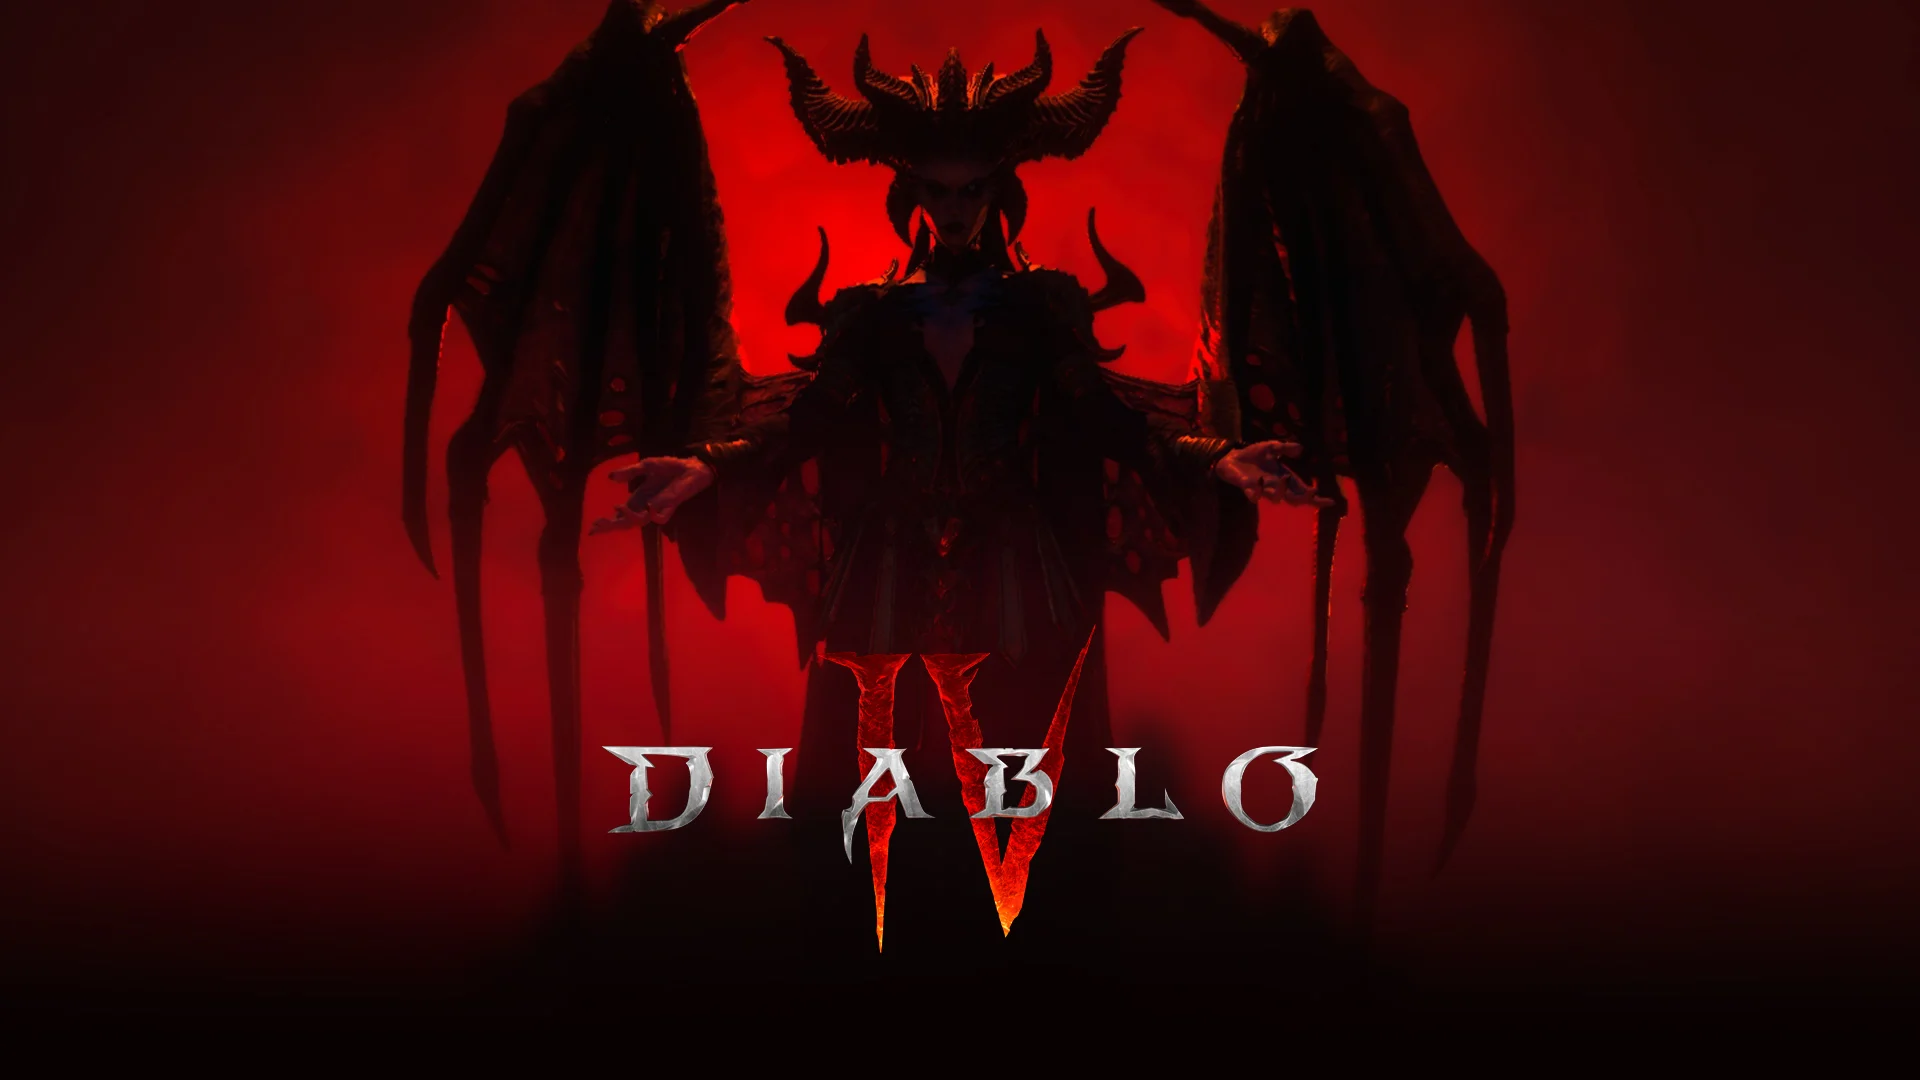 Solo per pochi eletti: Blizzard terrà presto una beta chiusa per testare Diablo IV